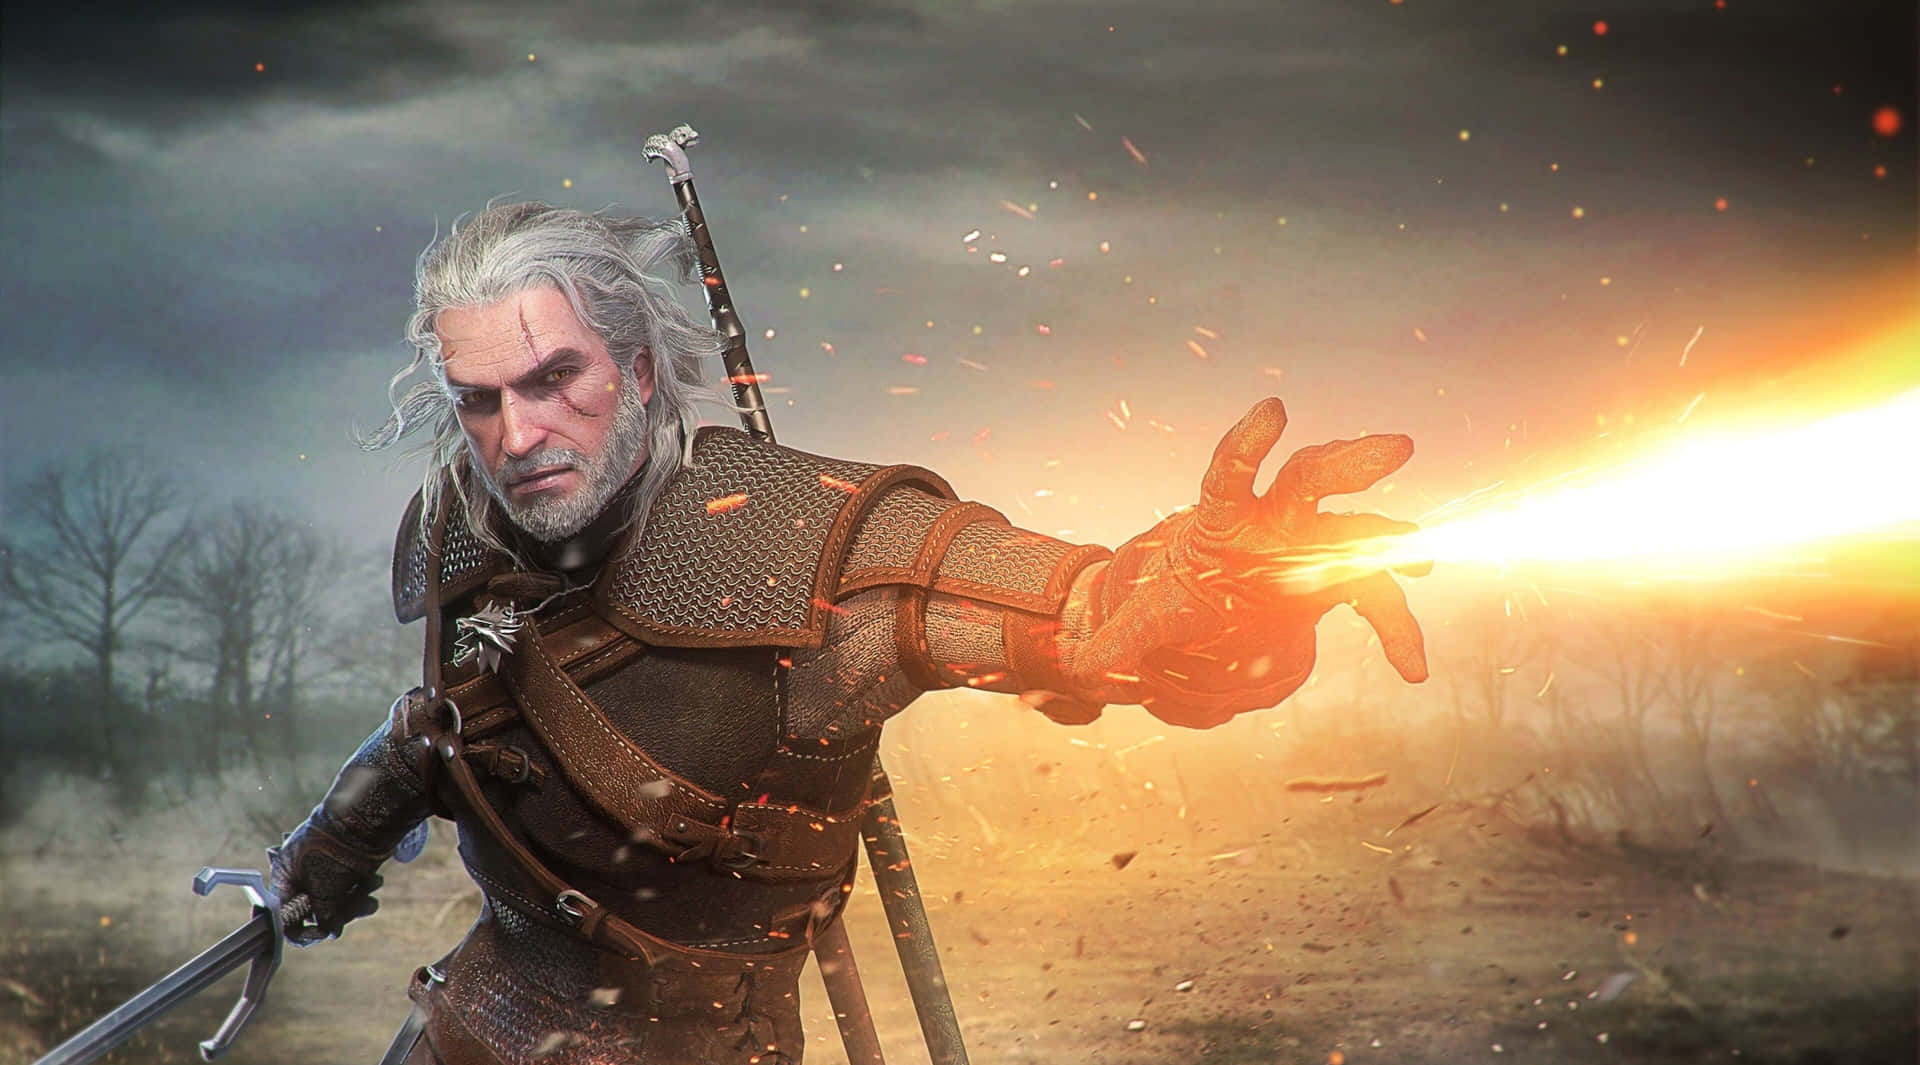 Uniscitia Geralt In Un Viaggio Mozzafiato In The Witcher 3: Wild Hunt.